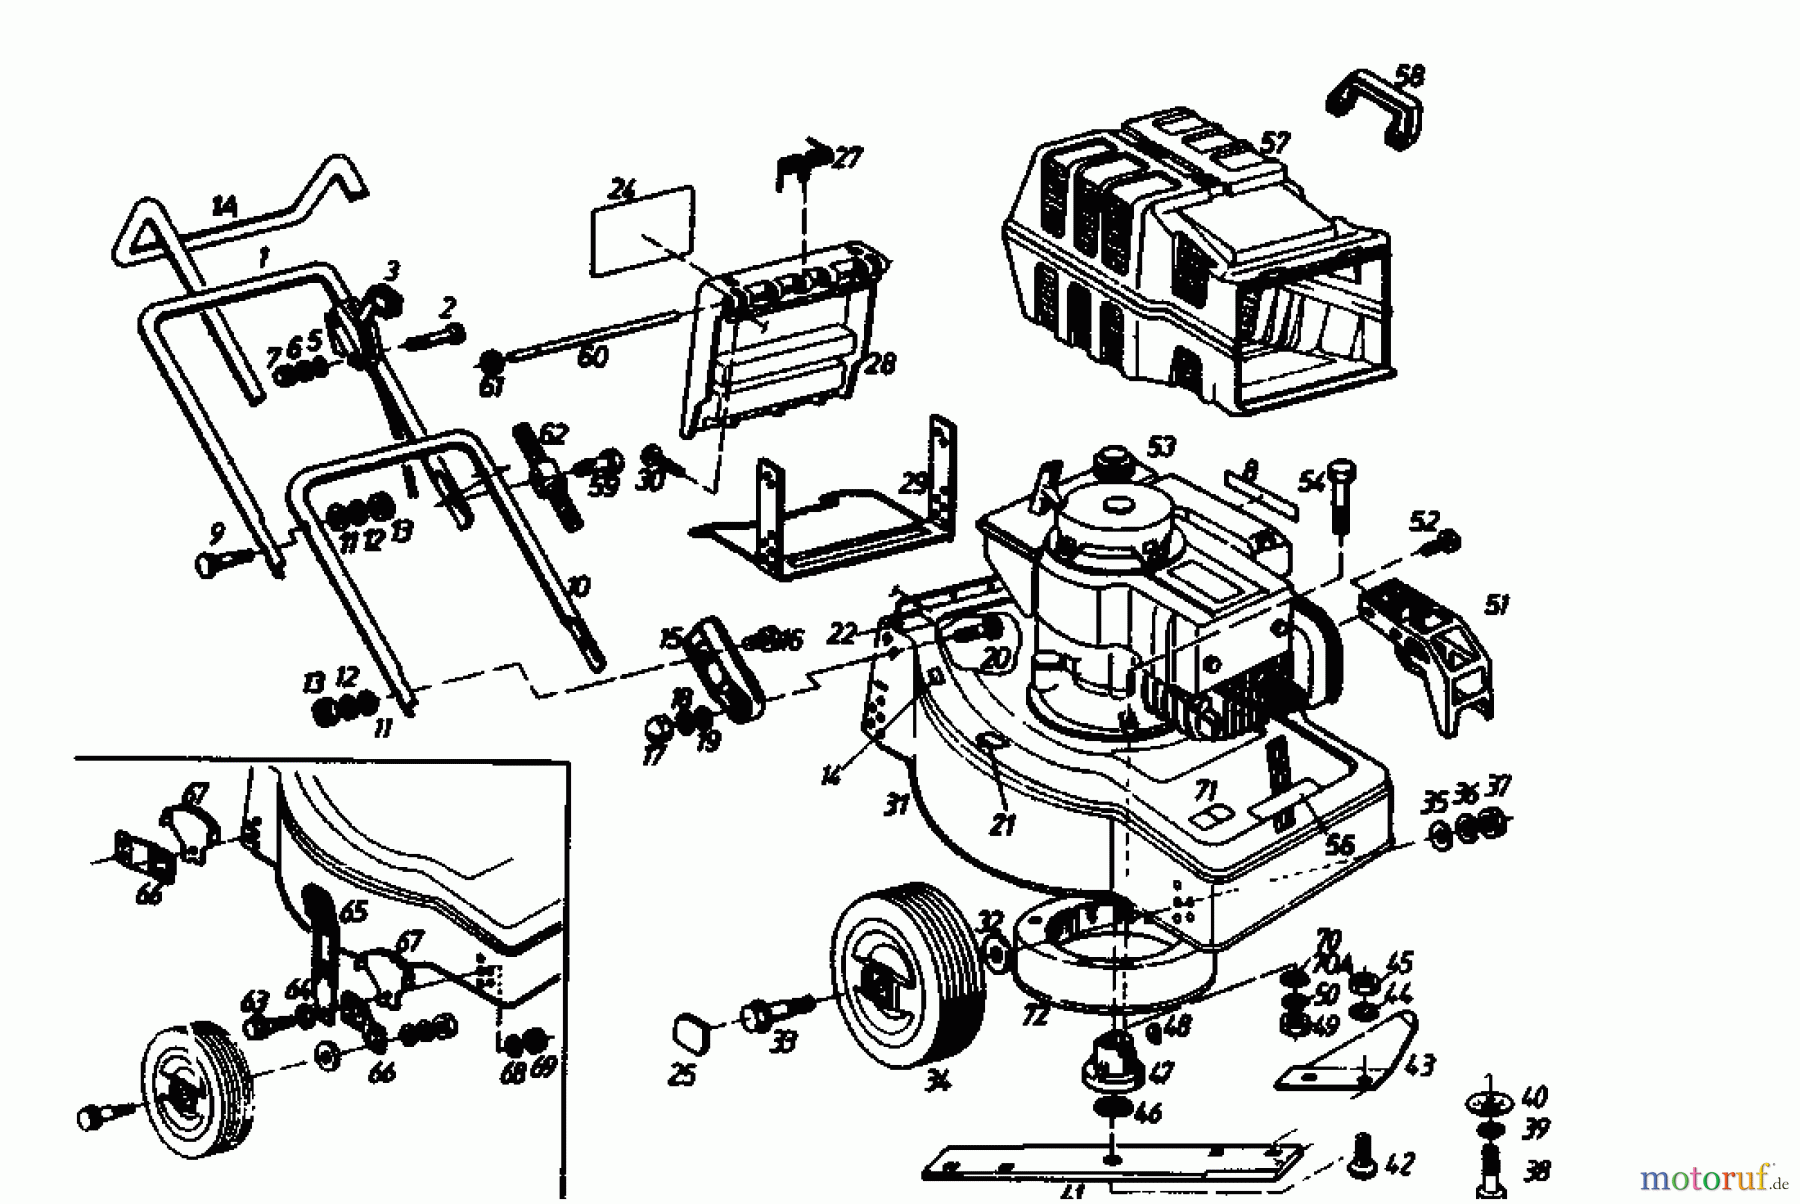  Golf Tondeuse thermique HBL 02880.04  (1989) Machine de base